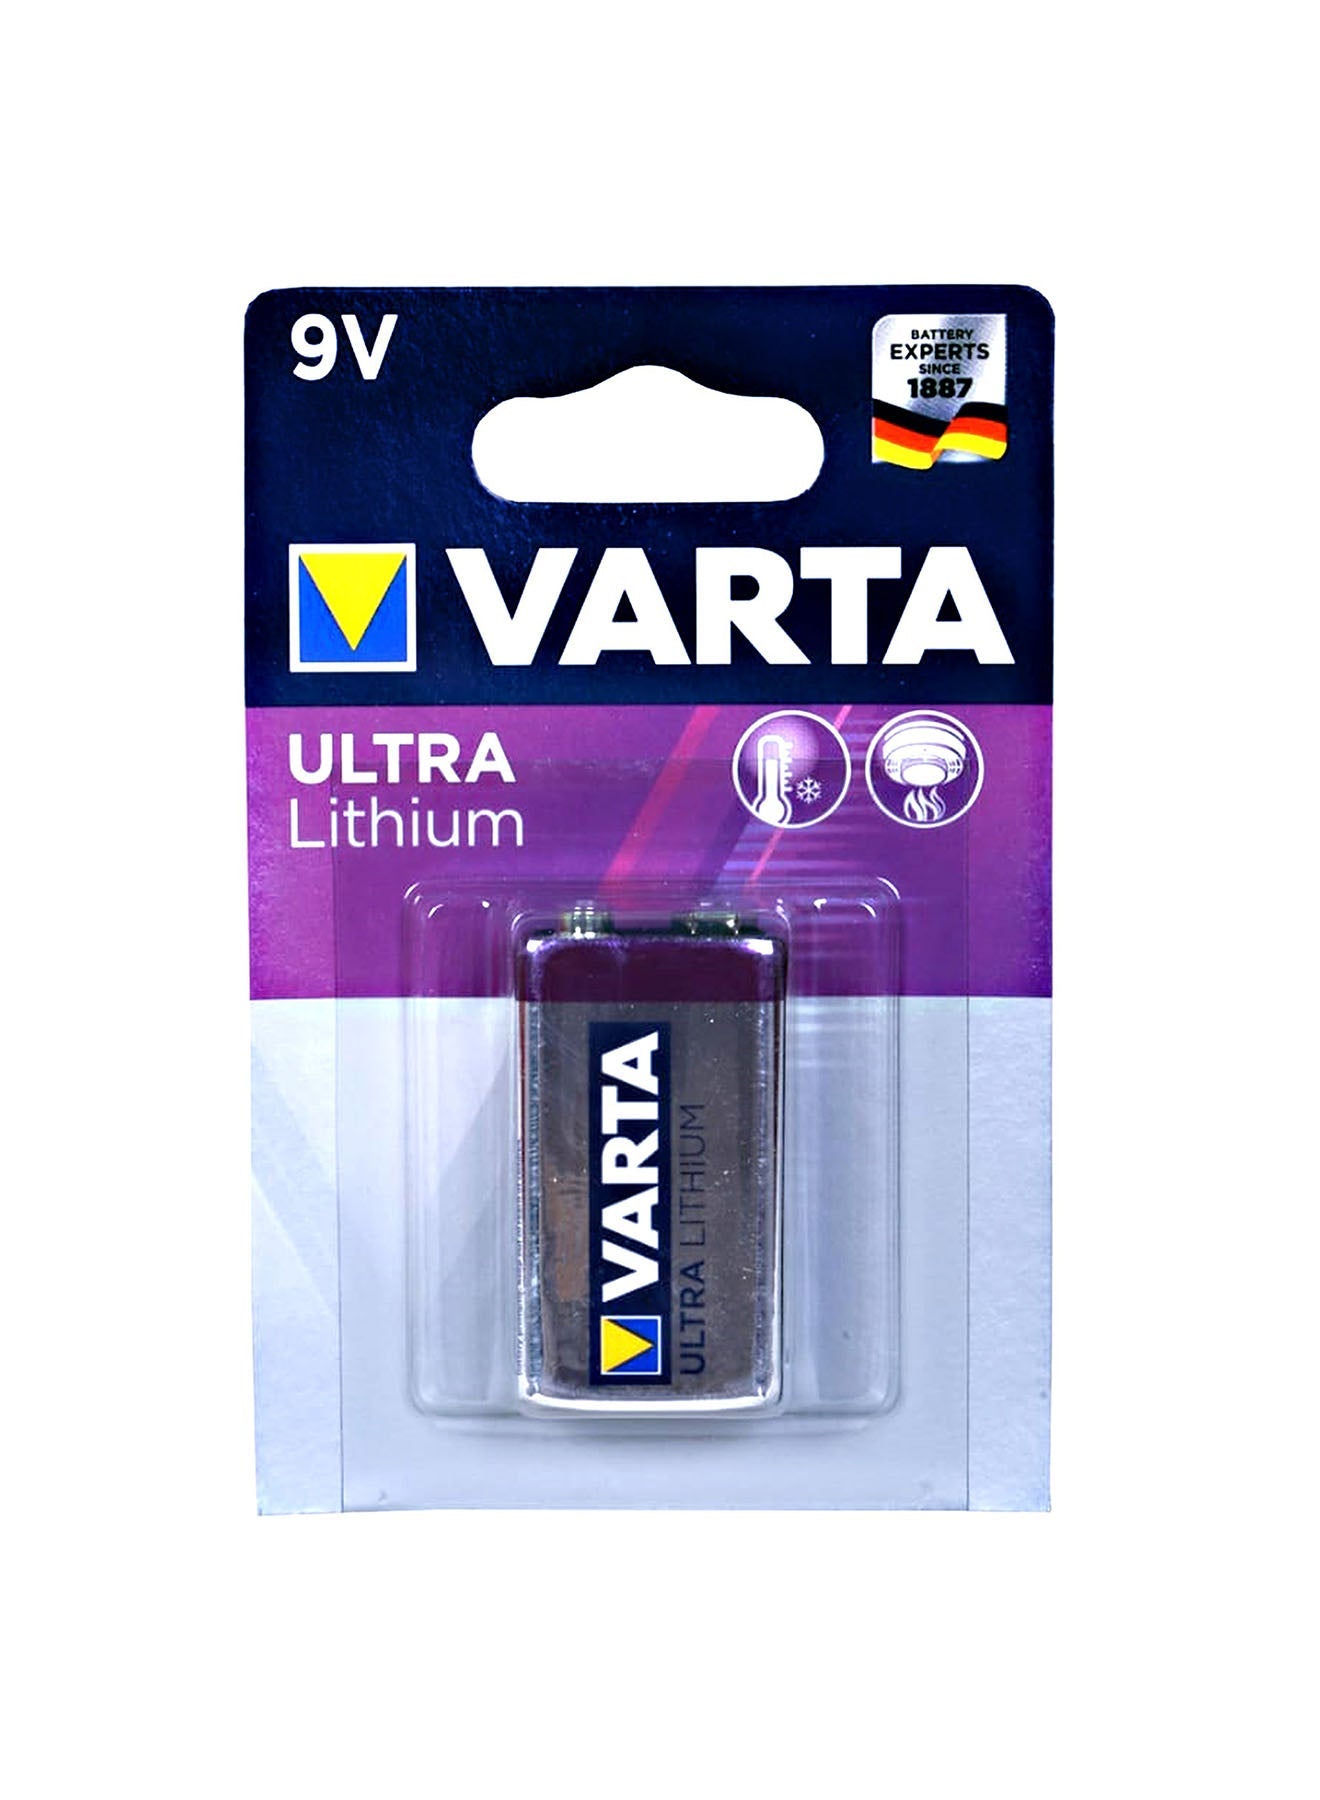 Varta Ultra Lithium 9VBlock 6 LR Batteries Value Pack of 4 